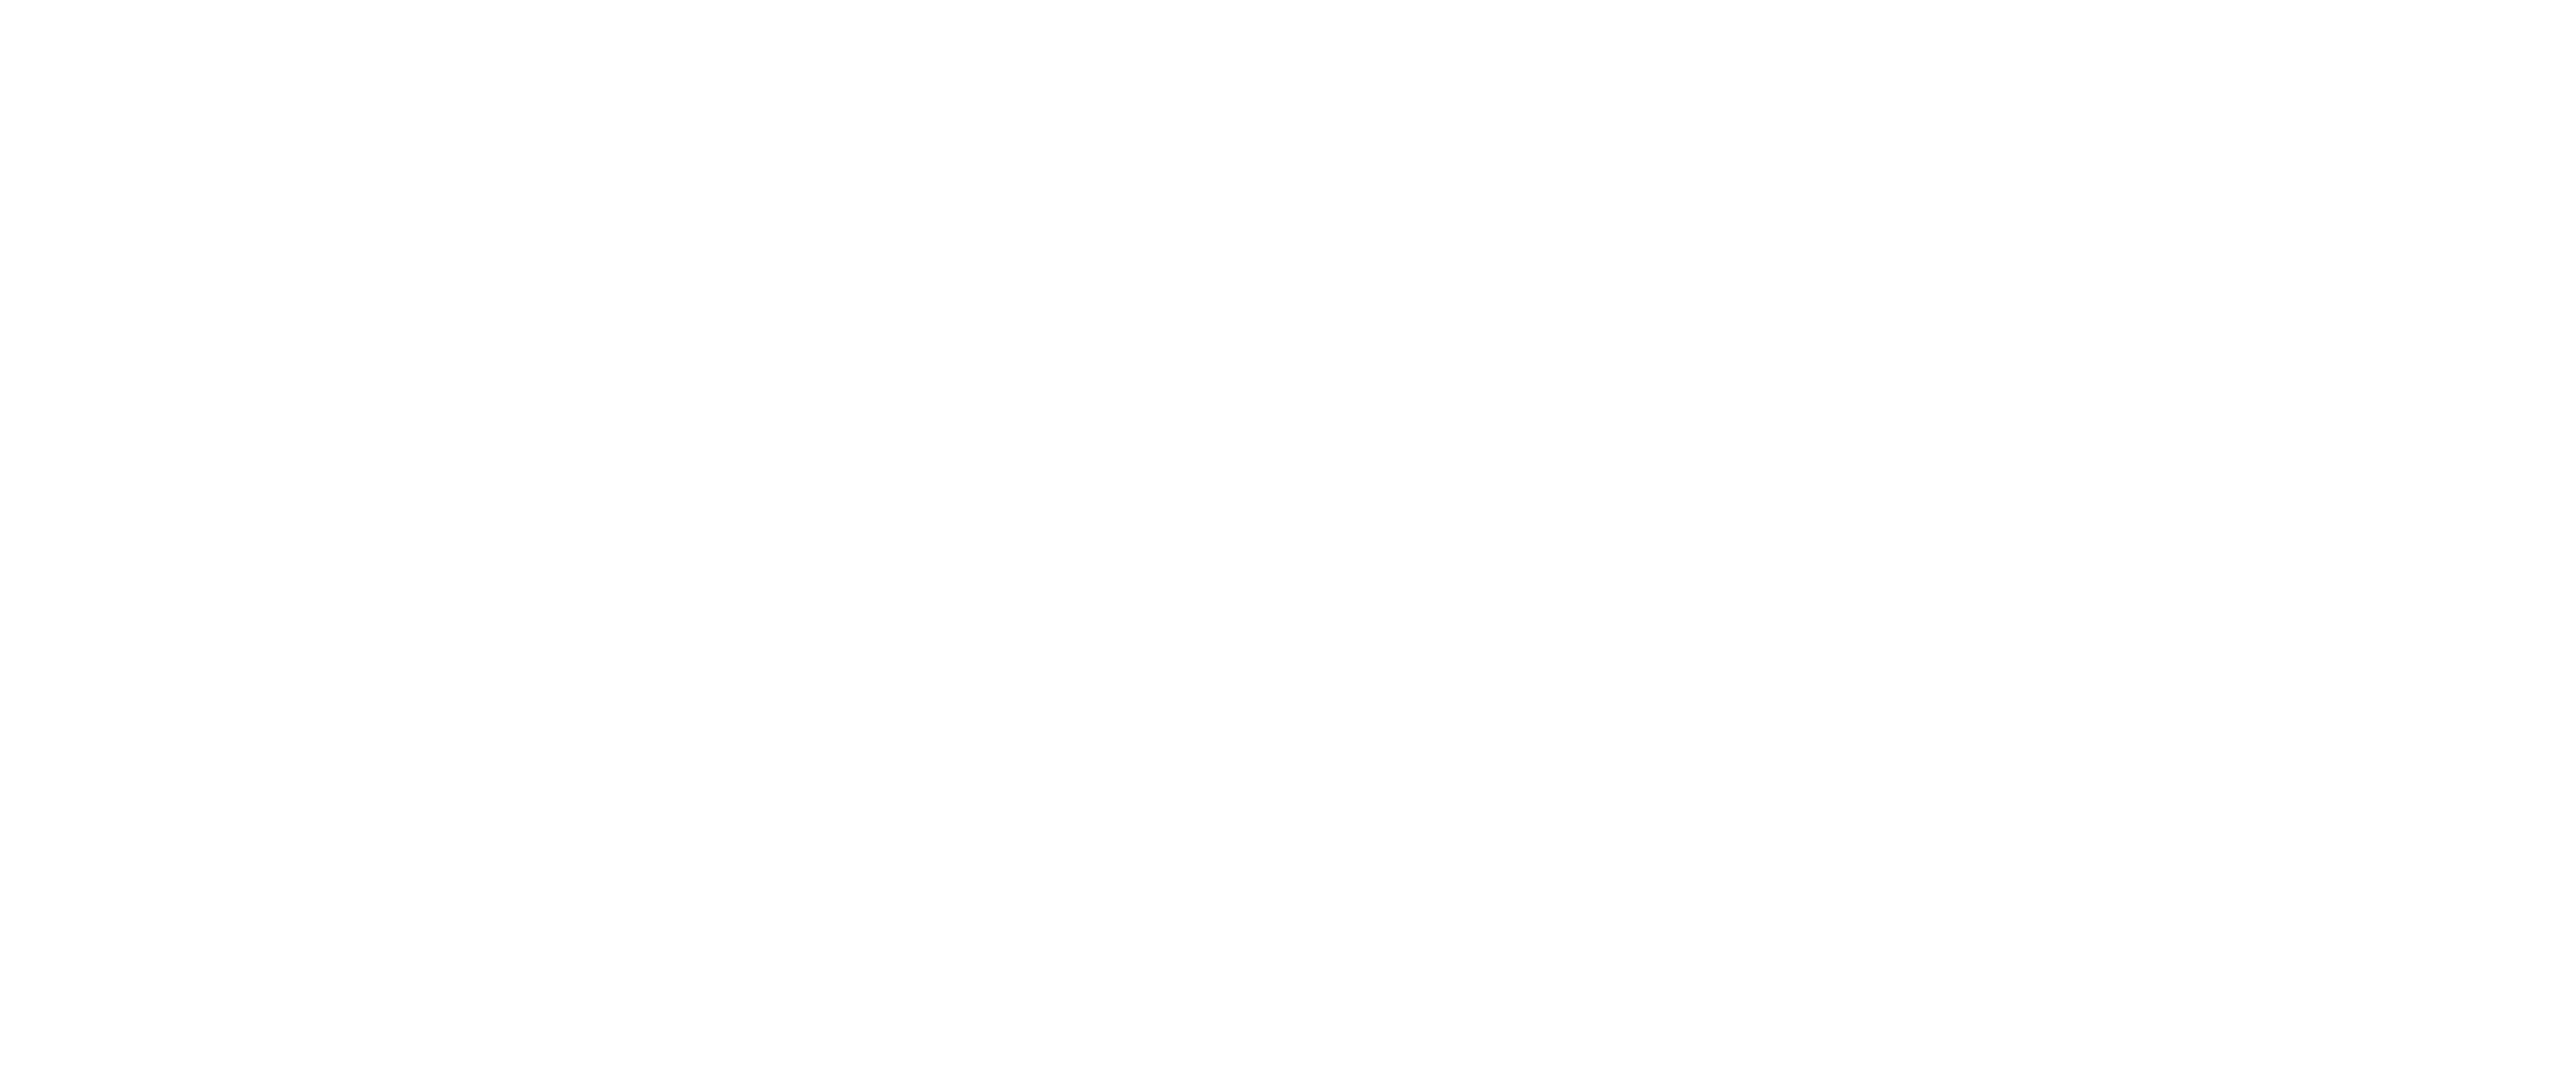 El Damero Digital